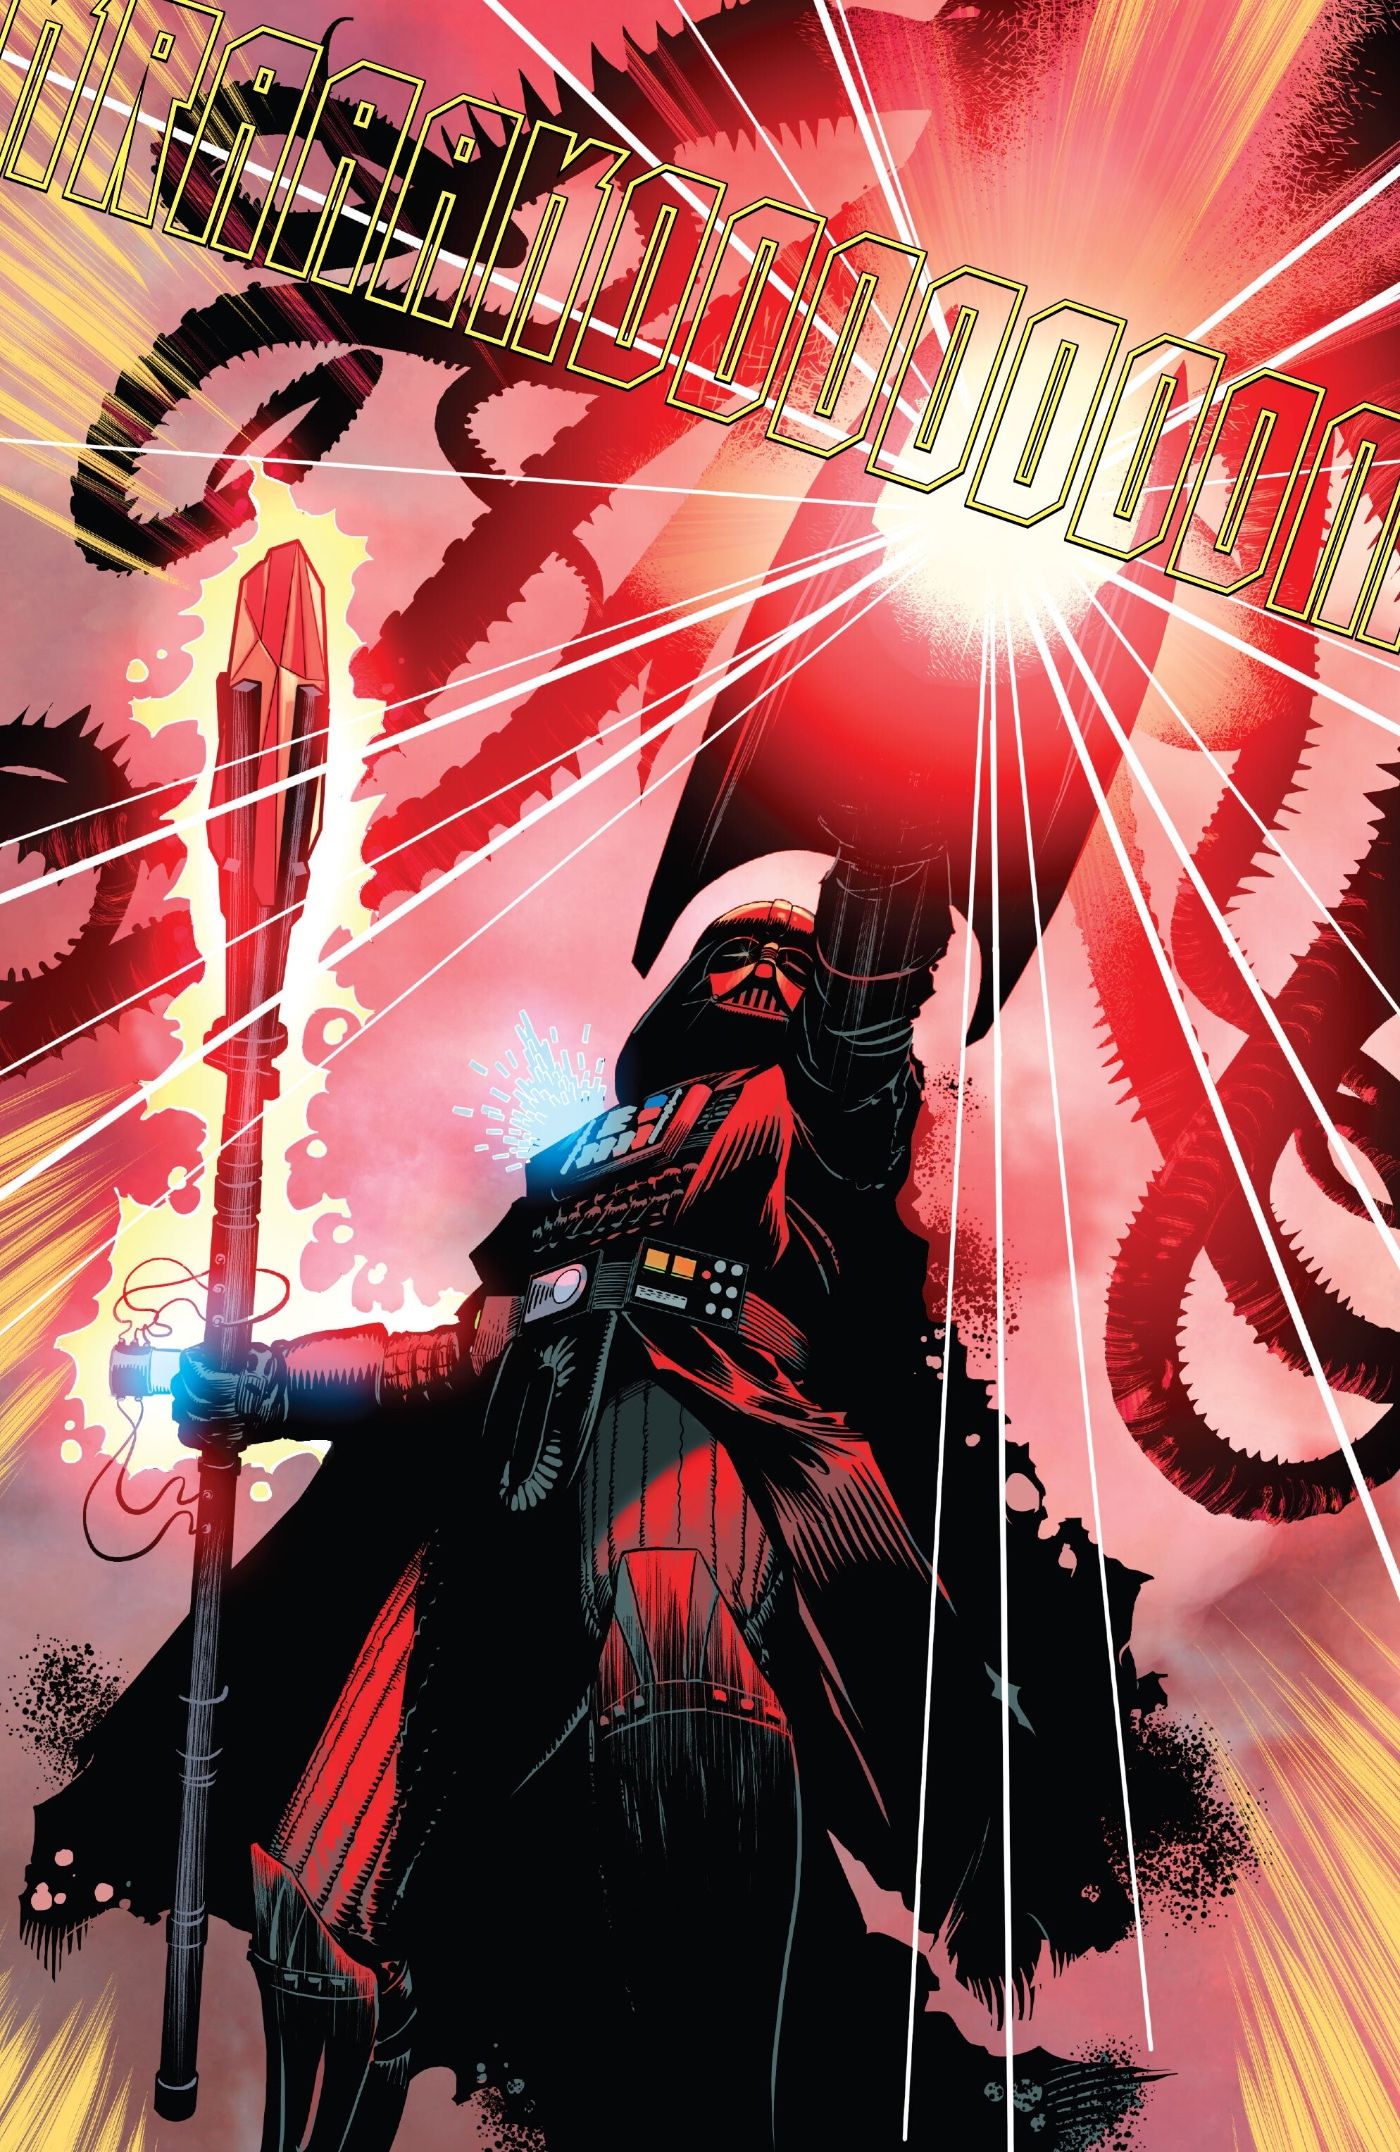 Vader empunhando nova arma Kyber vermelha em Darth Vader #47